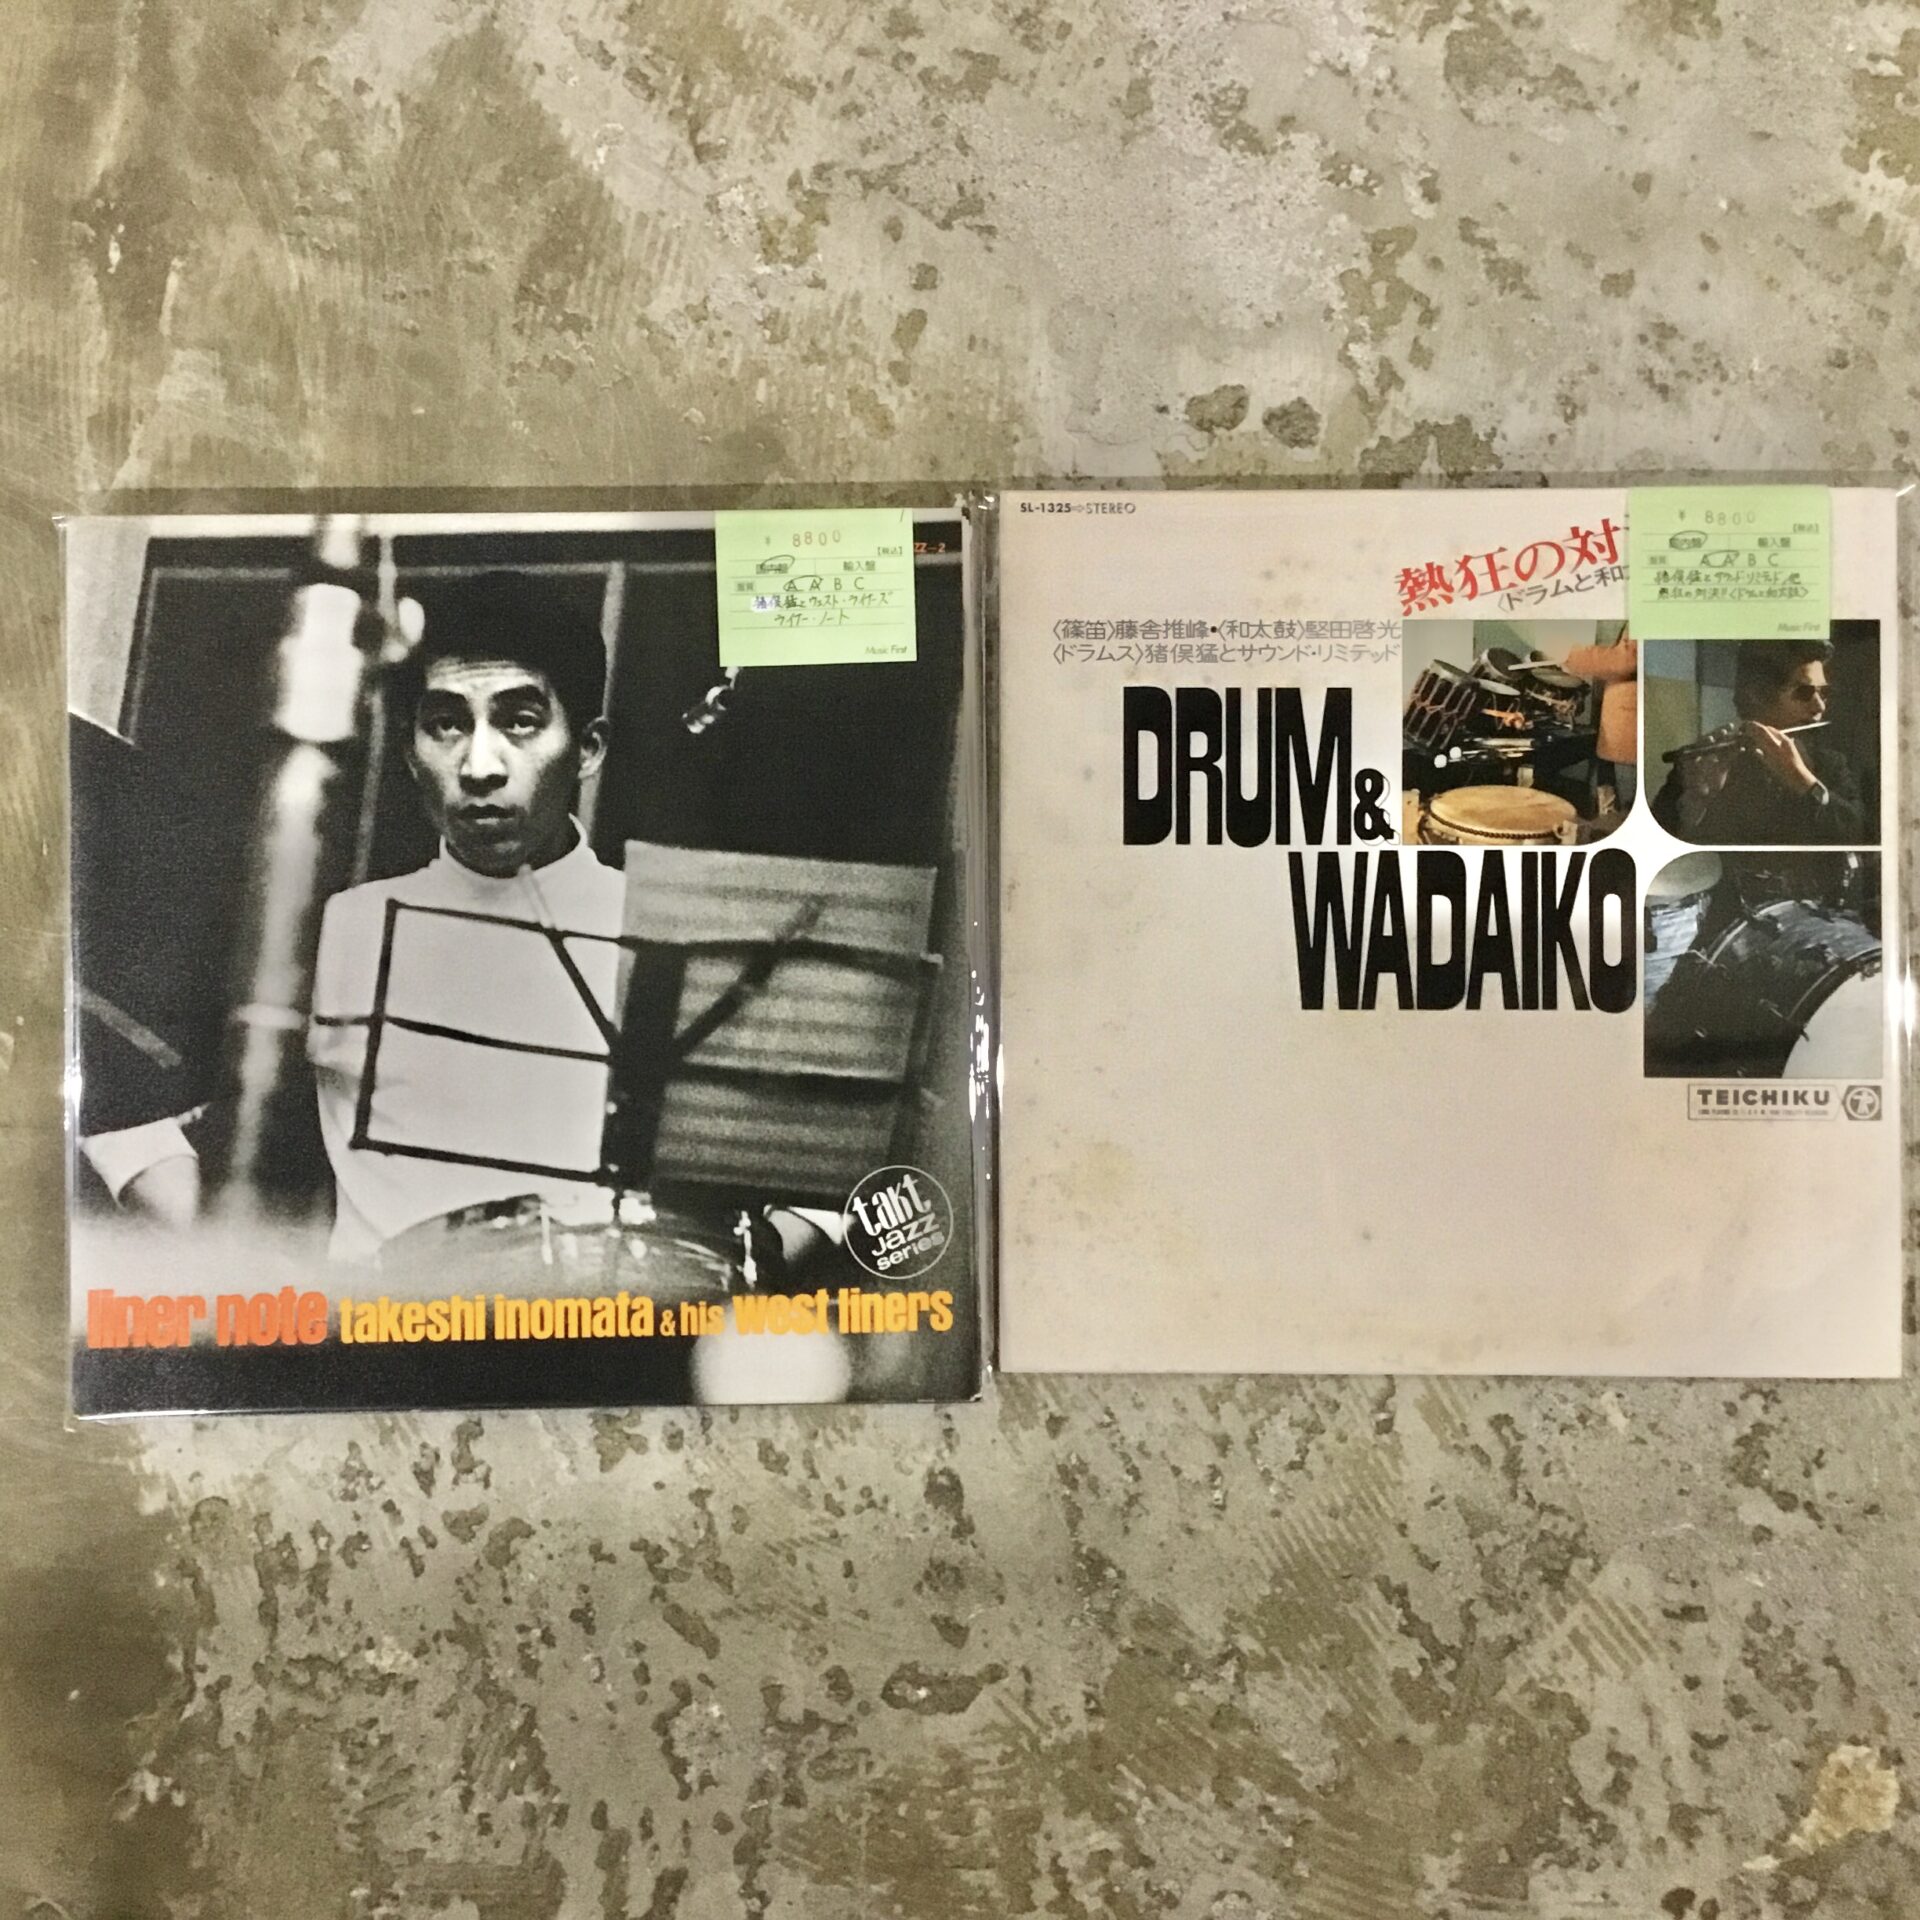 日本を代表するジャズドラマー、猪俣猛の稀少作品LPが2枚入りました。